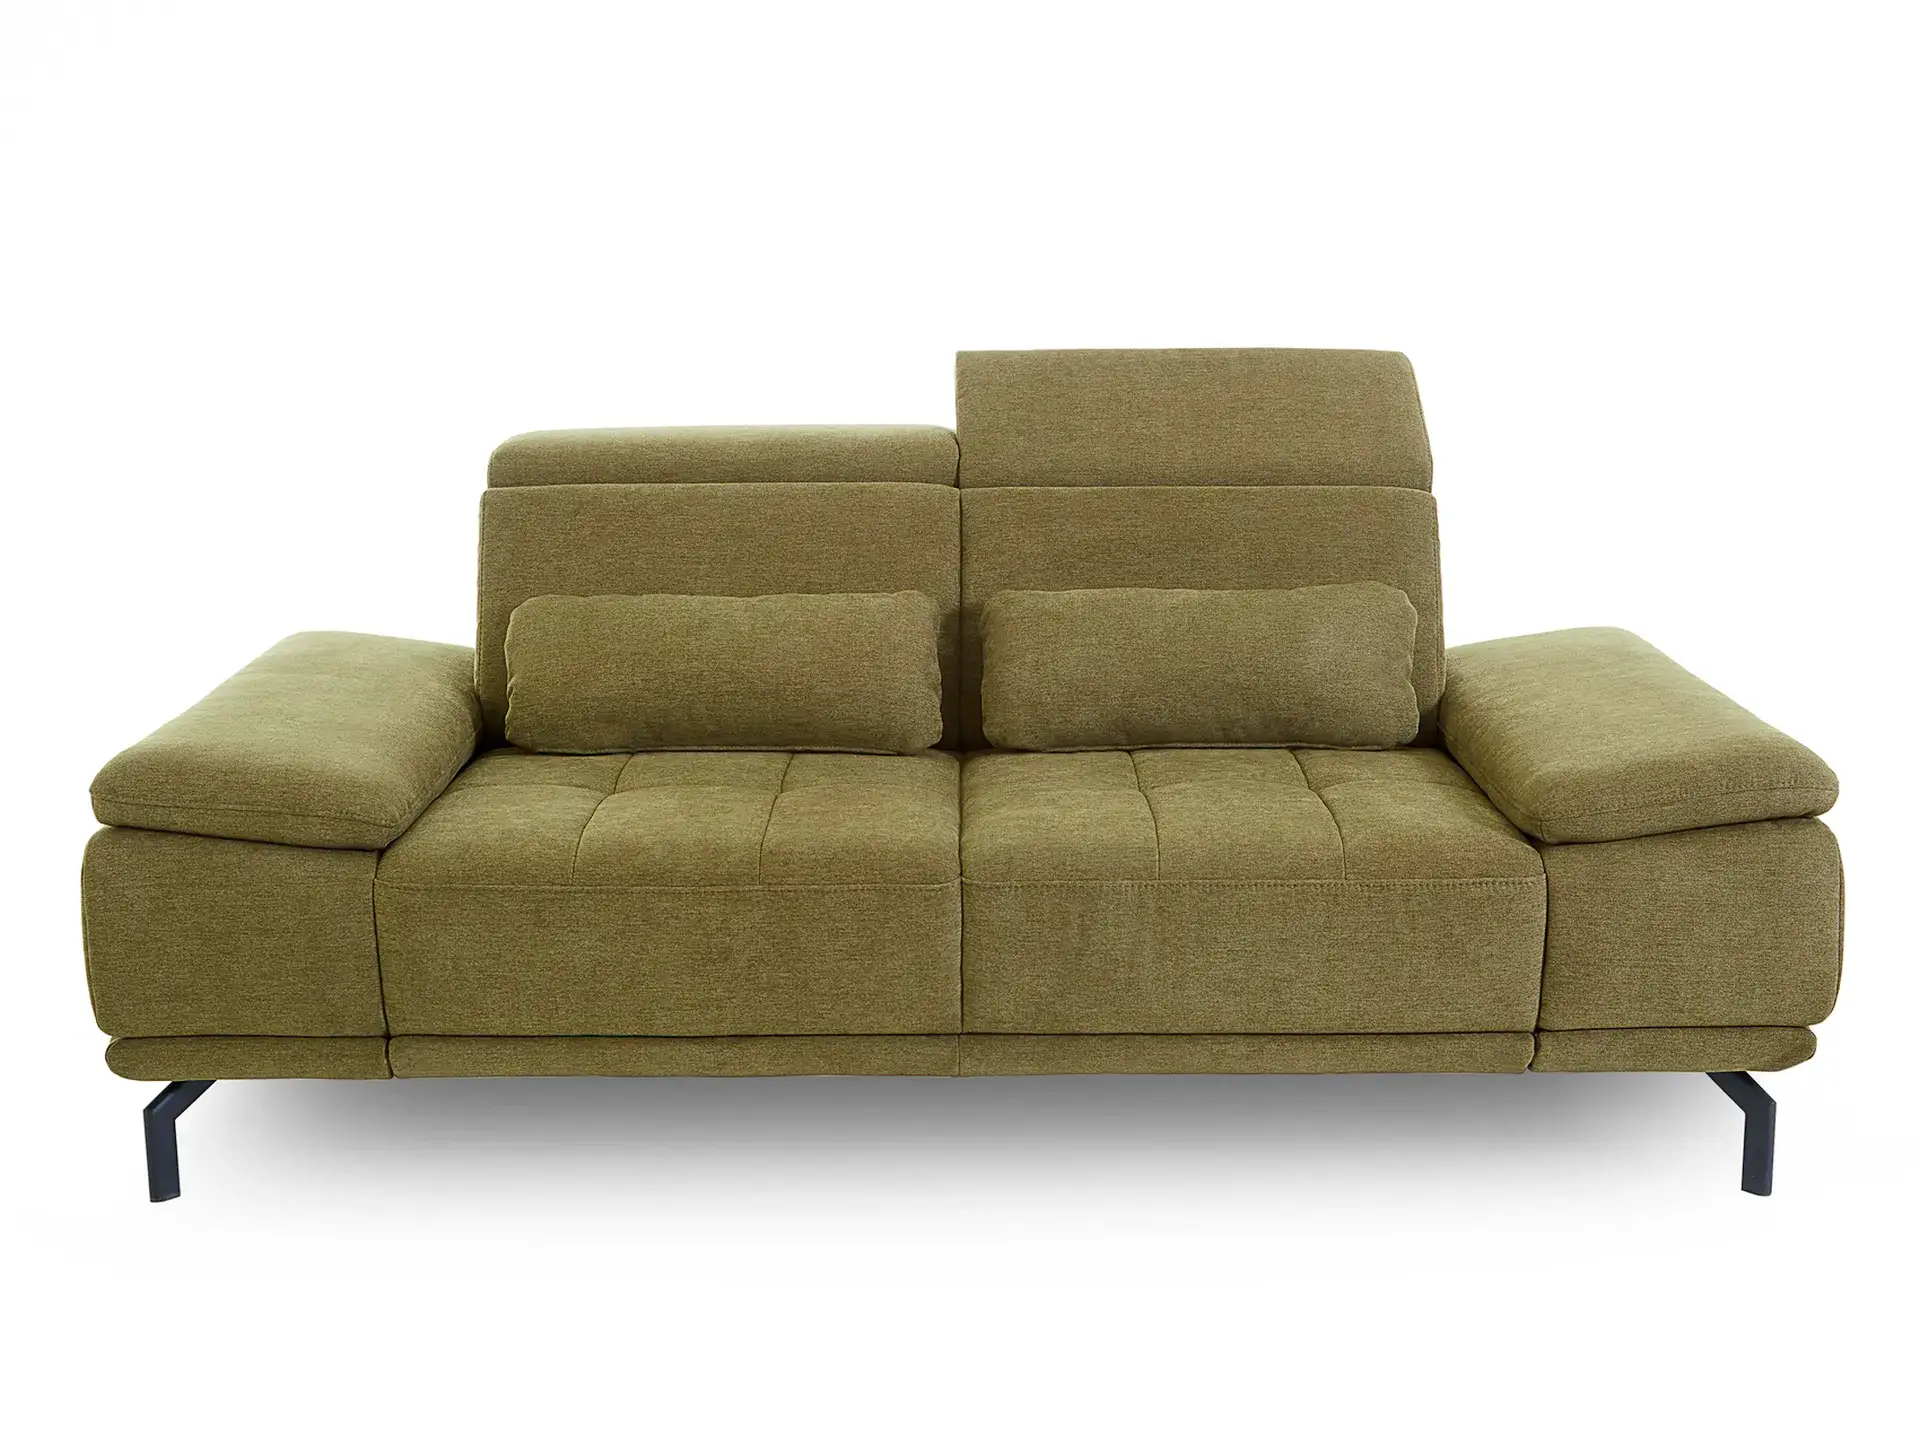 verstellbare kopfstützen machen ohne aufwand aus dem sofa einen hochlehner, viel funktionaltät in diesem polstermöbel